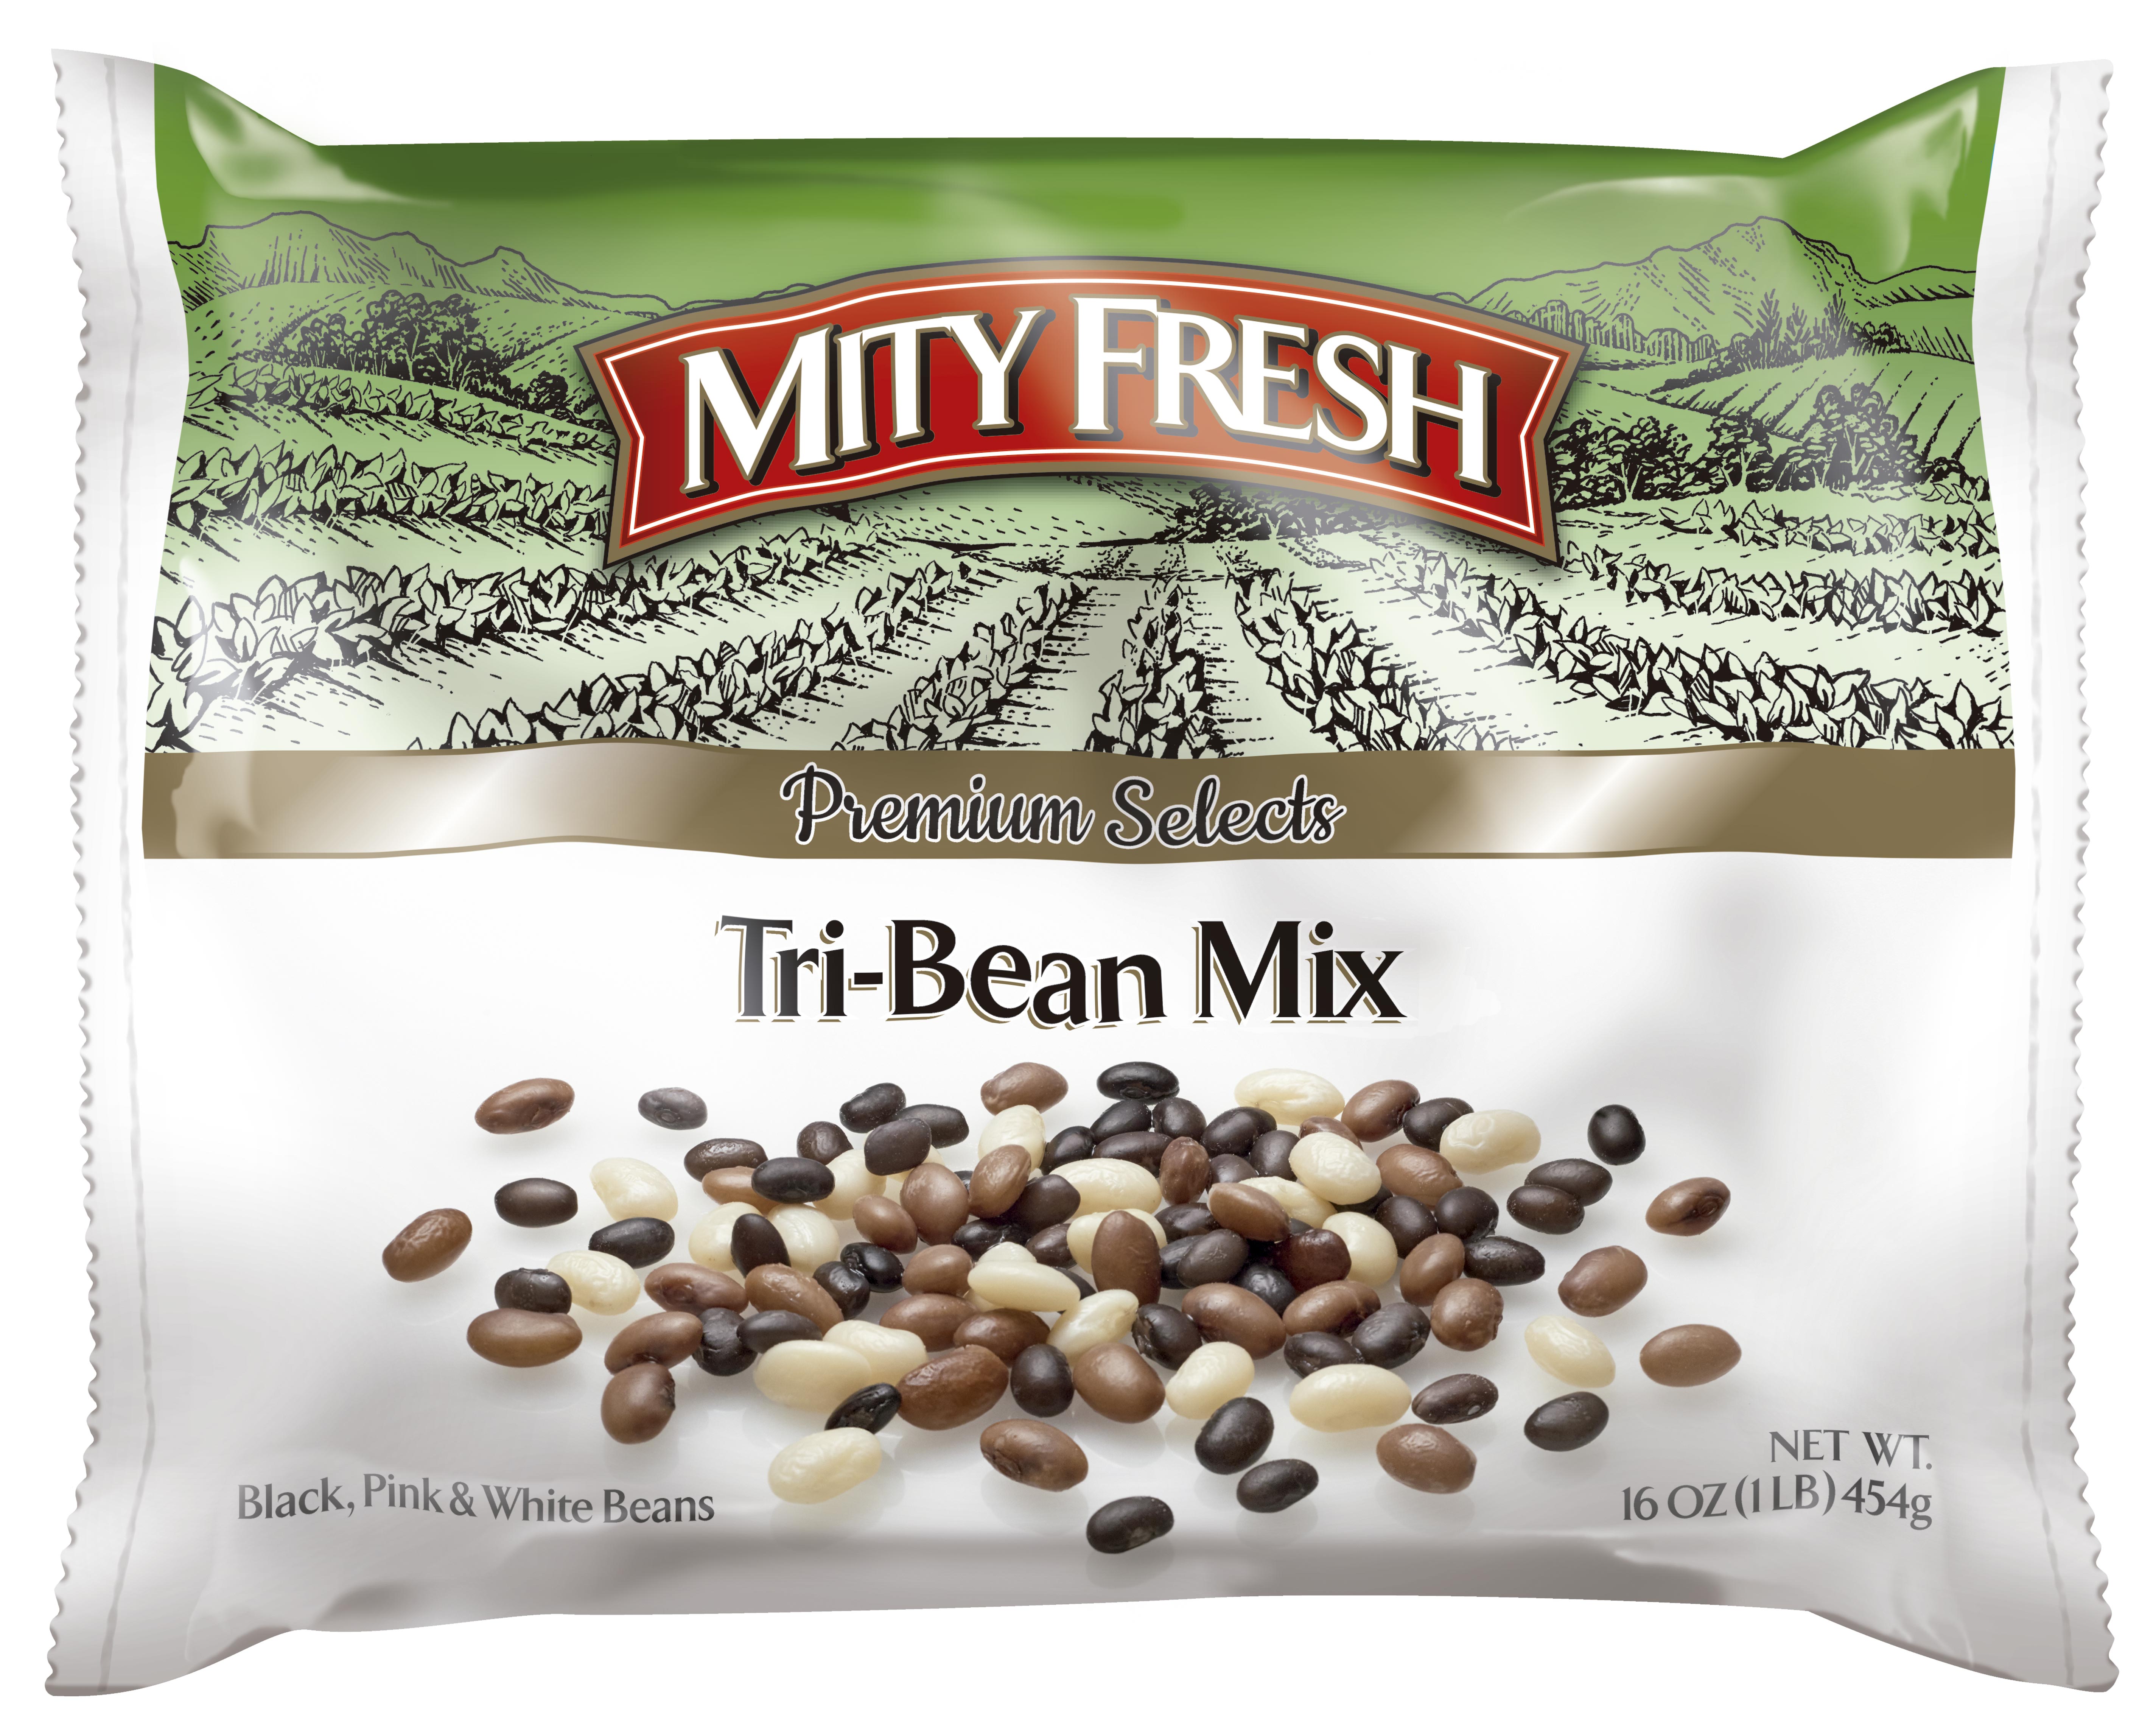 Tri-Bean Mix